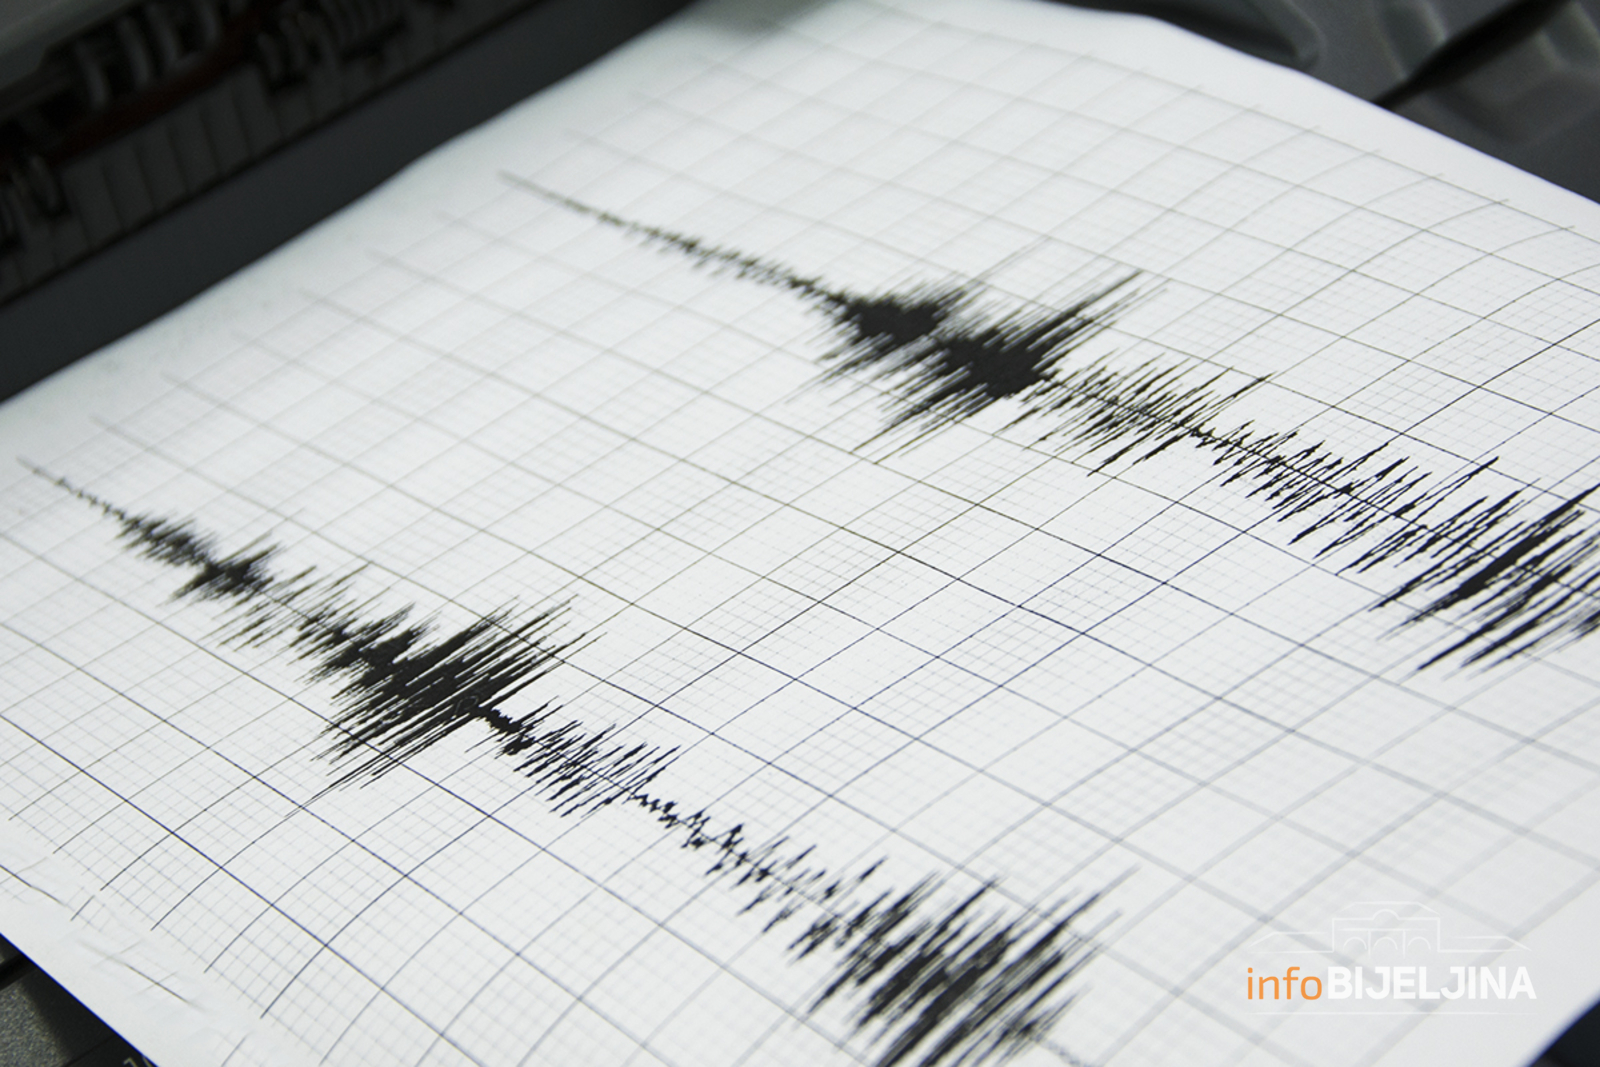 Novi slabiji zemljotres u Hrvatskoj